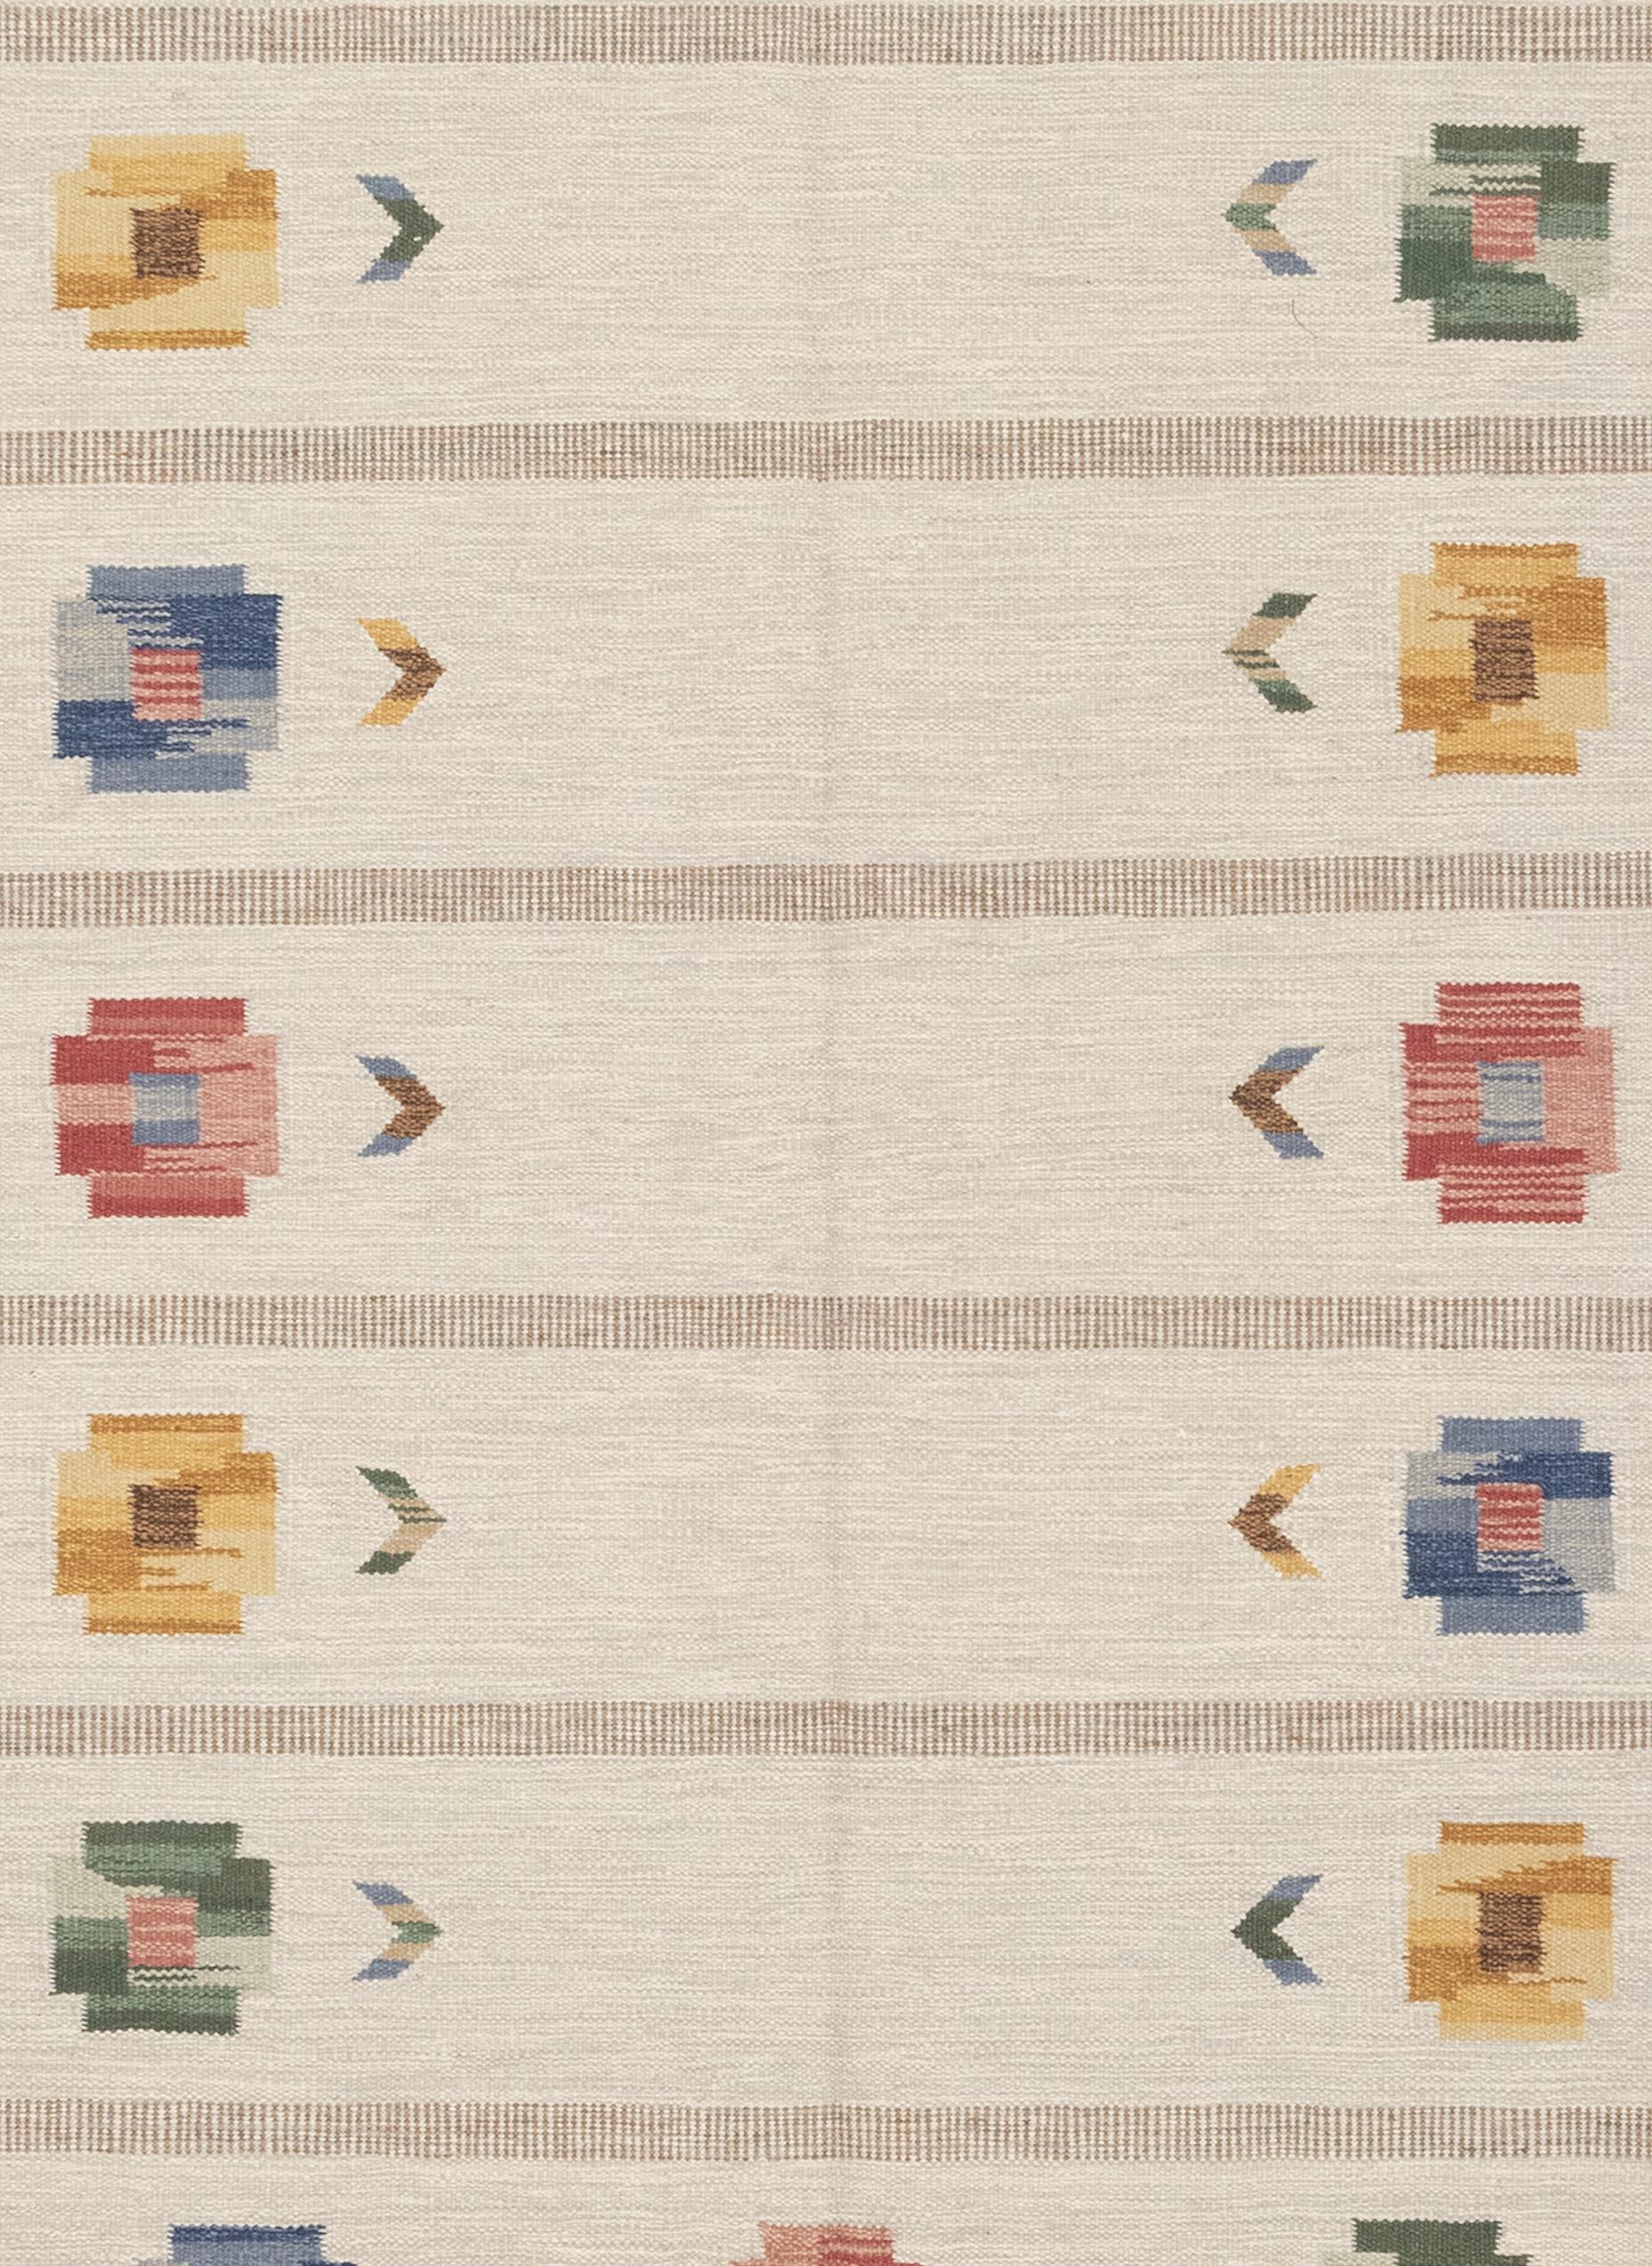 Es handelt sich um einen skandinavischen Kilim-Teppich aus den 1950er Jahren, der eine sehr schöne Komposition aufweist. Es zeigt eine elegante Darstellung von floralen Motiven, die wie ein Stiefmütterchenkranz am Rand platziert sind. Ein gedämpfter